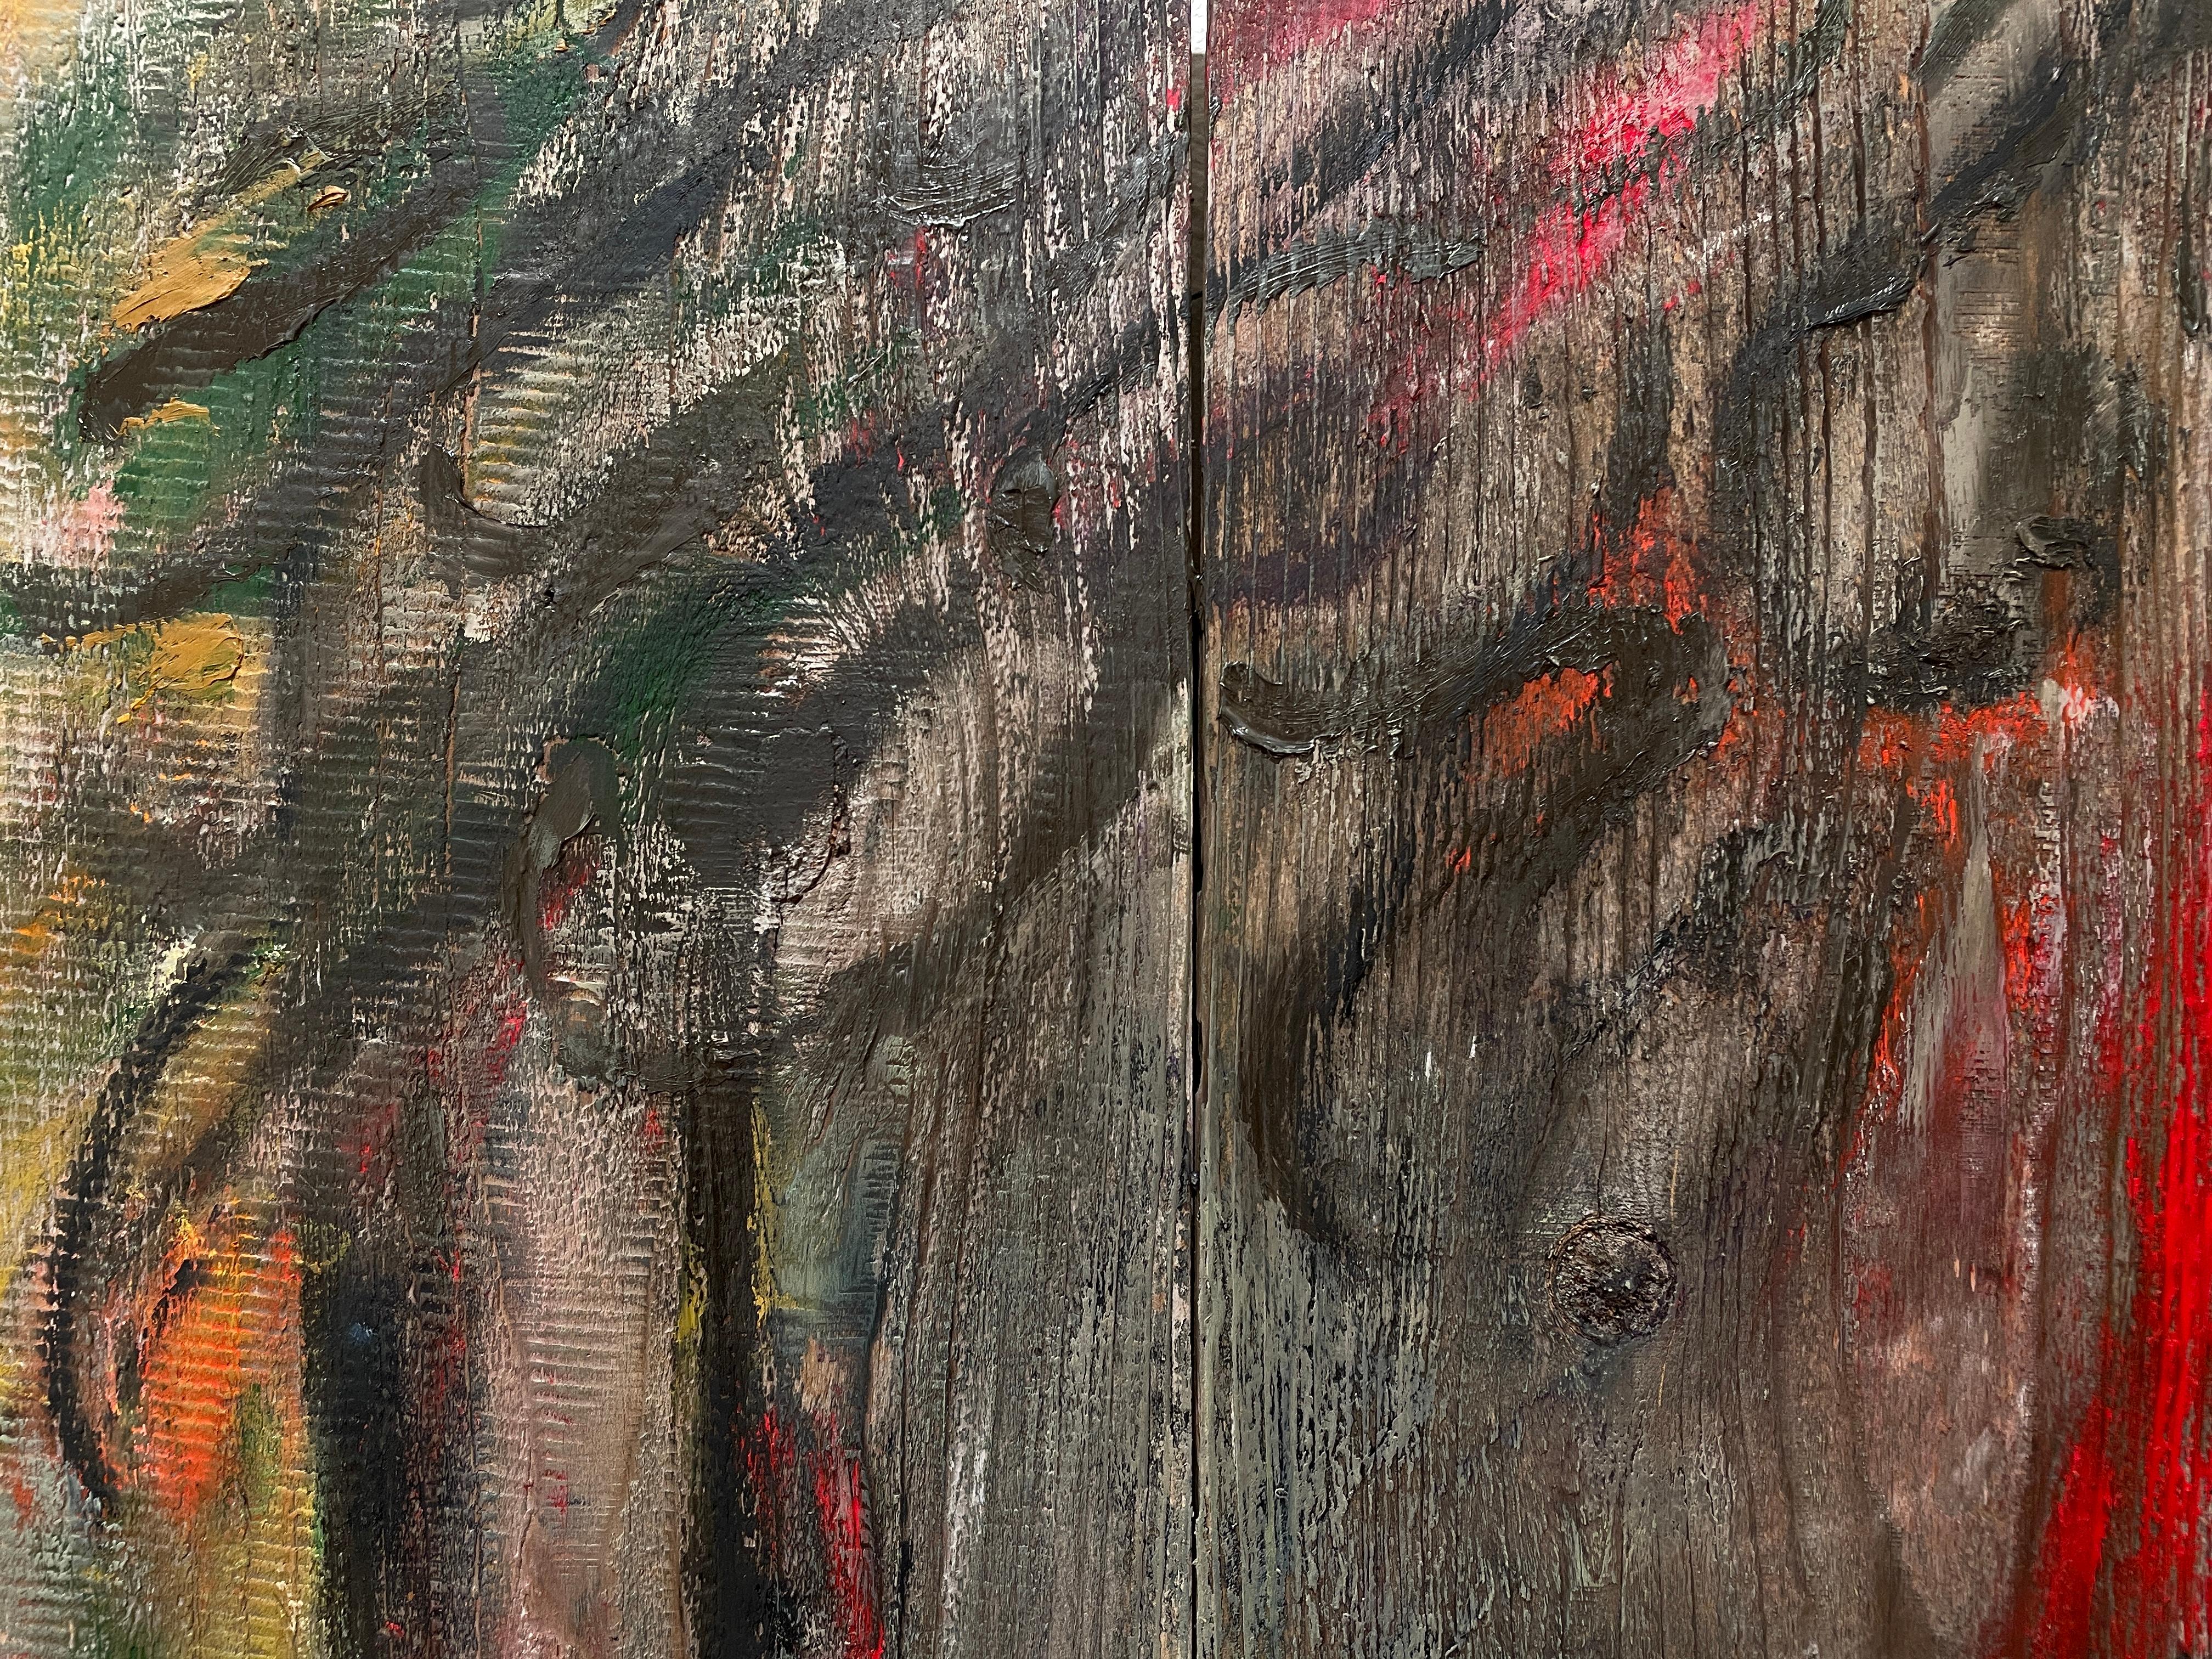 Ooh La La' - Femme nue figurative - Peinture à l'huile contemporaine sur Wood - Painting de Kristy Chettle